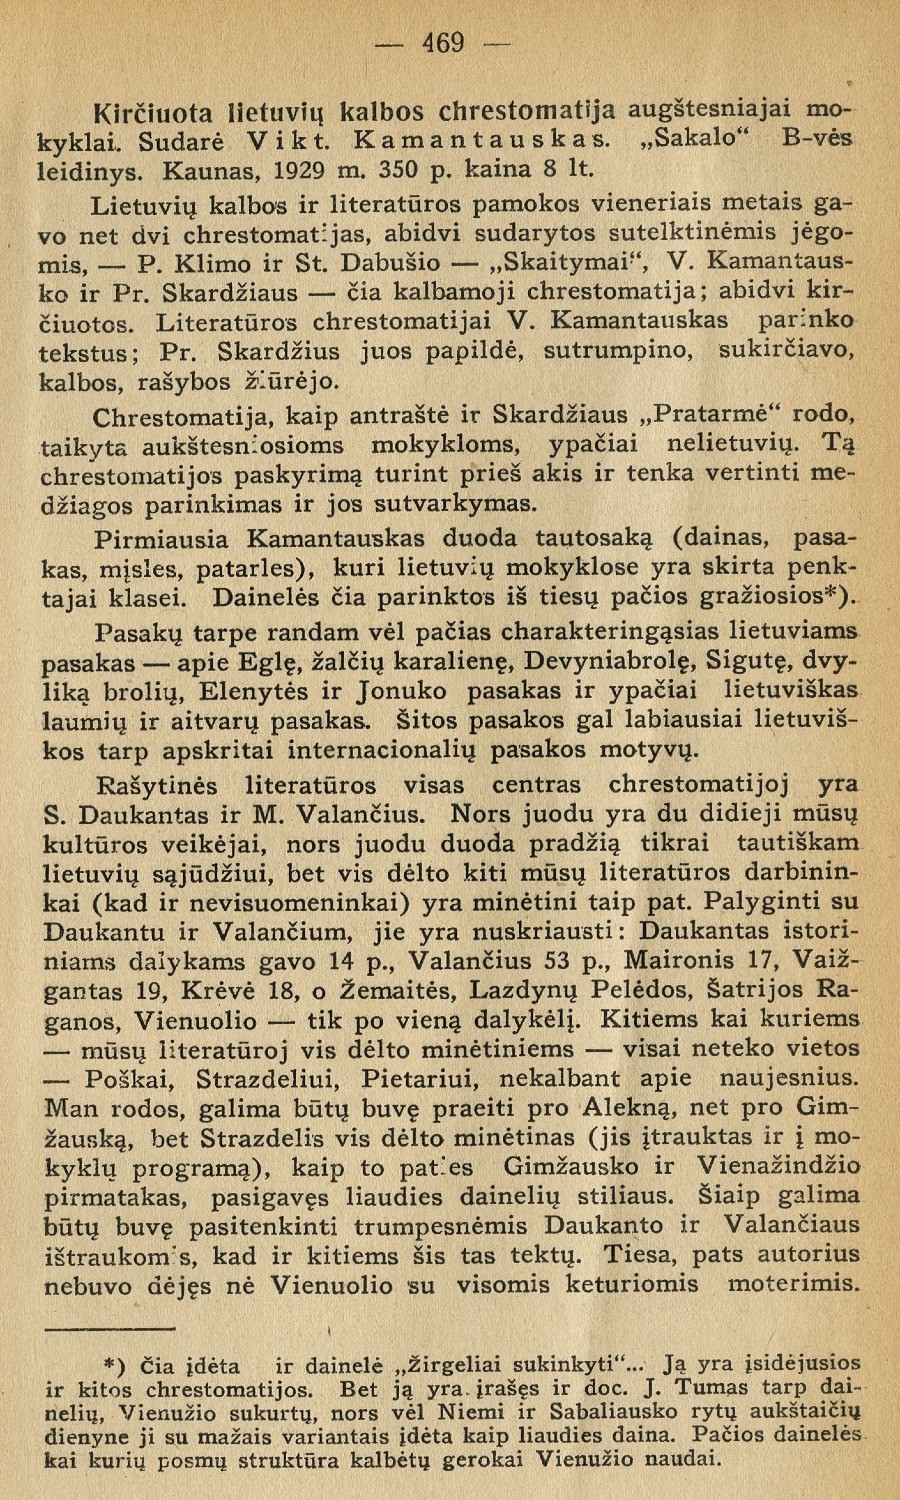 Kirčiuota lietuvių kalbos chrestomatija: [rec.] / J. Ambrazevičius. – Rec. kn.: Kirčiuota lietuvių kalbos chrestomatija. – Kaunas: „Sakalo“ b-vės leidinys, 1929 // Židinys. – 1929, Nr. 12, p. 469–471.